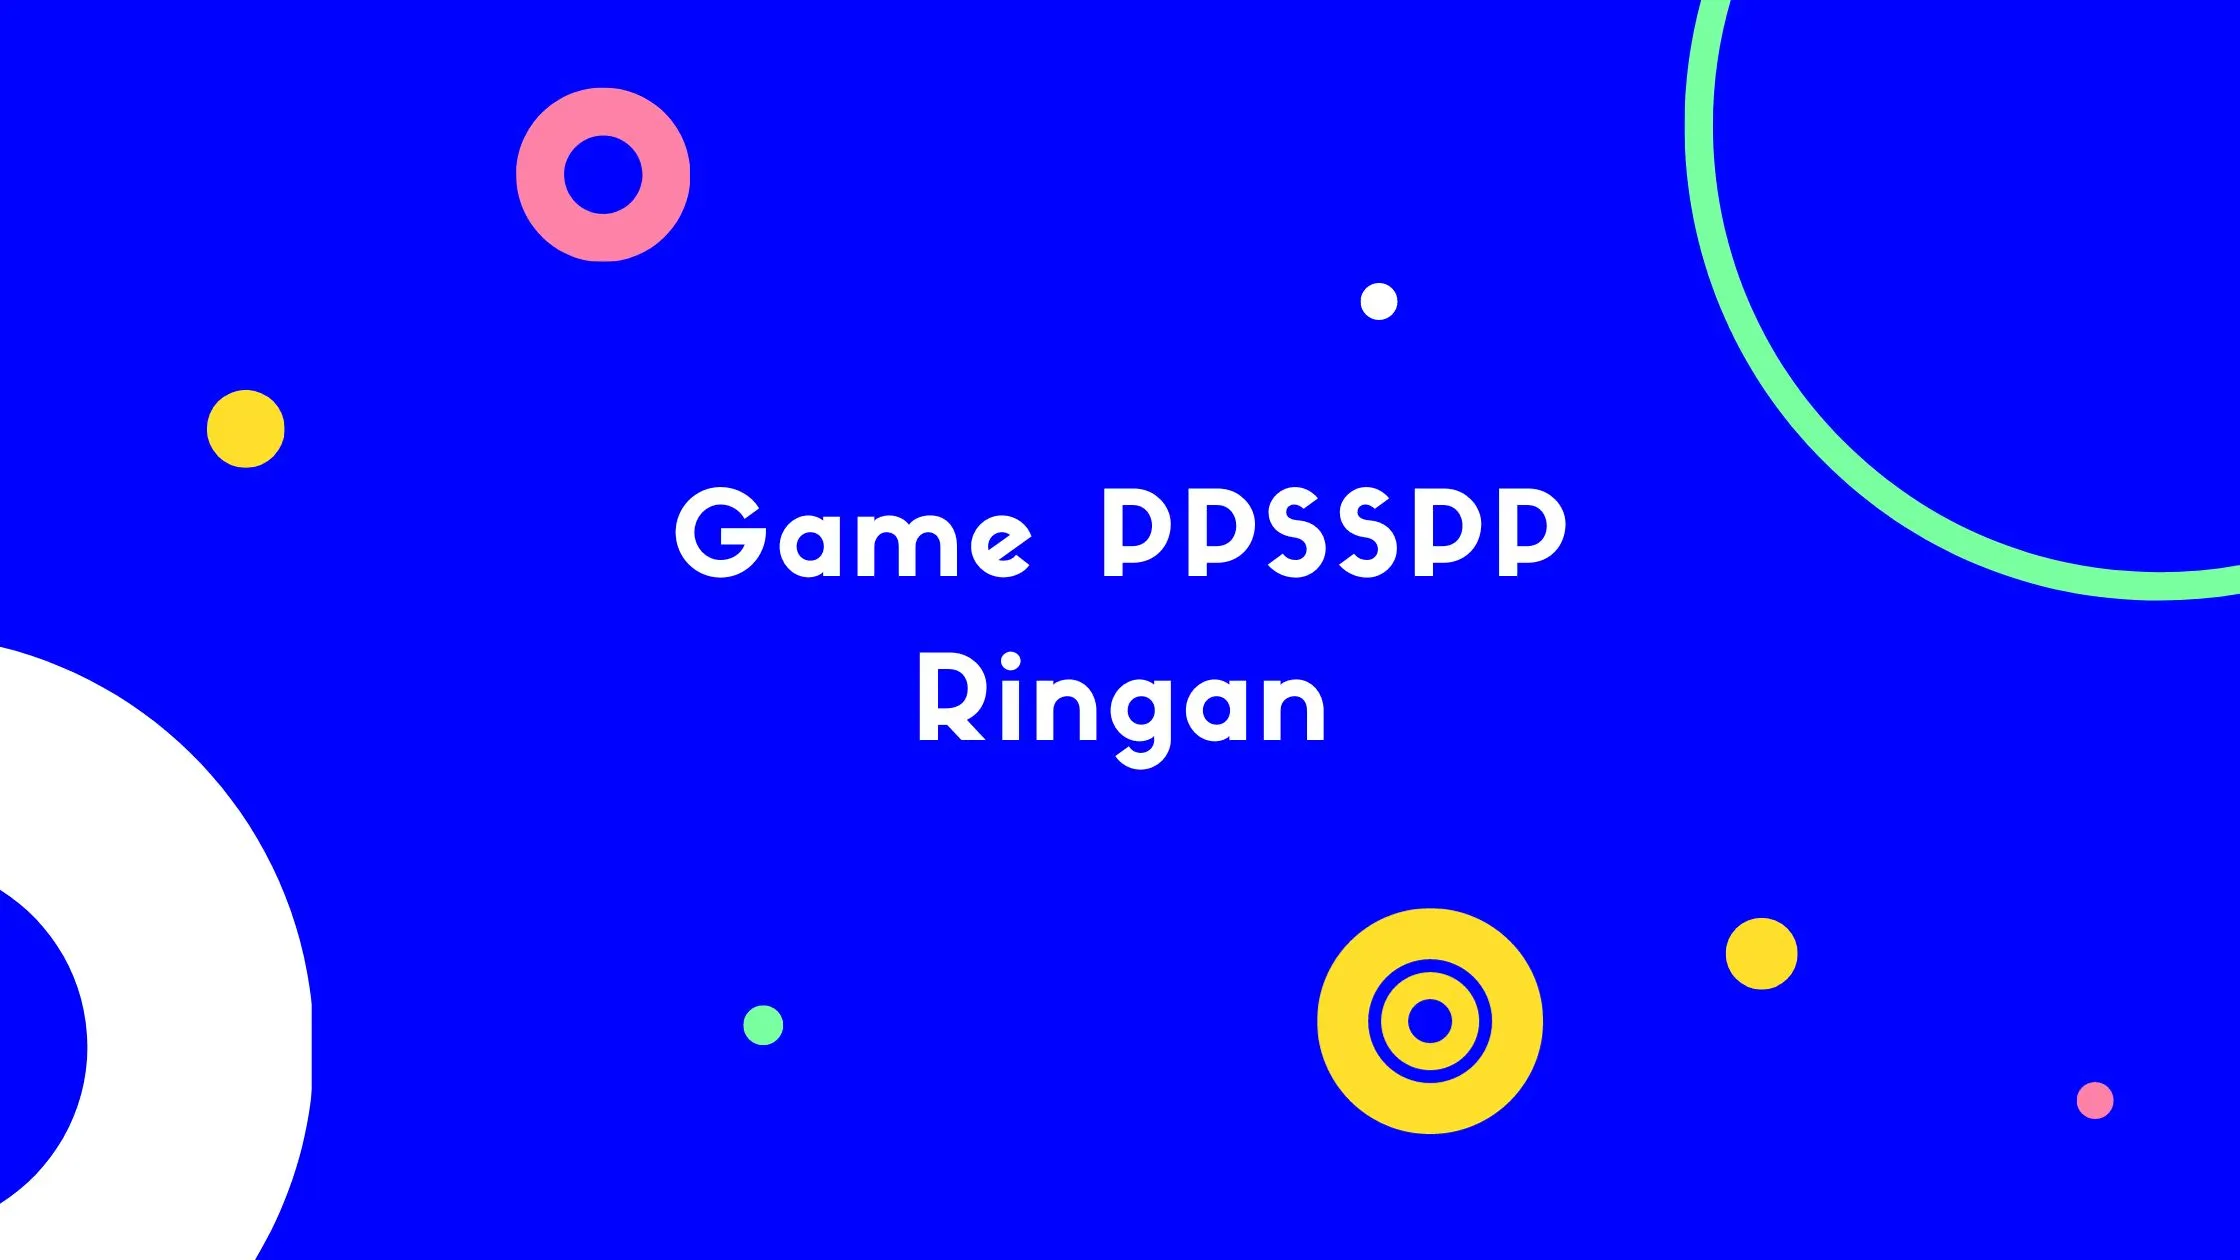 Game PPSSPP Ringan